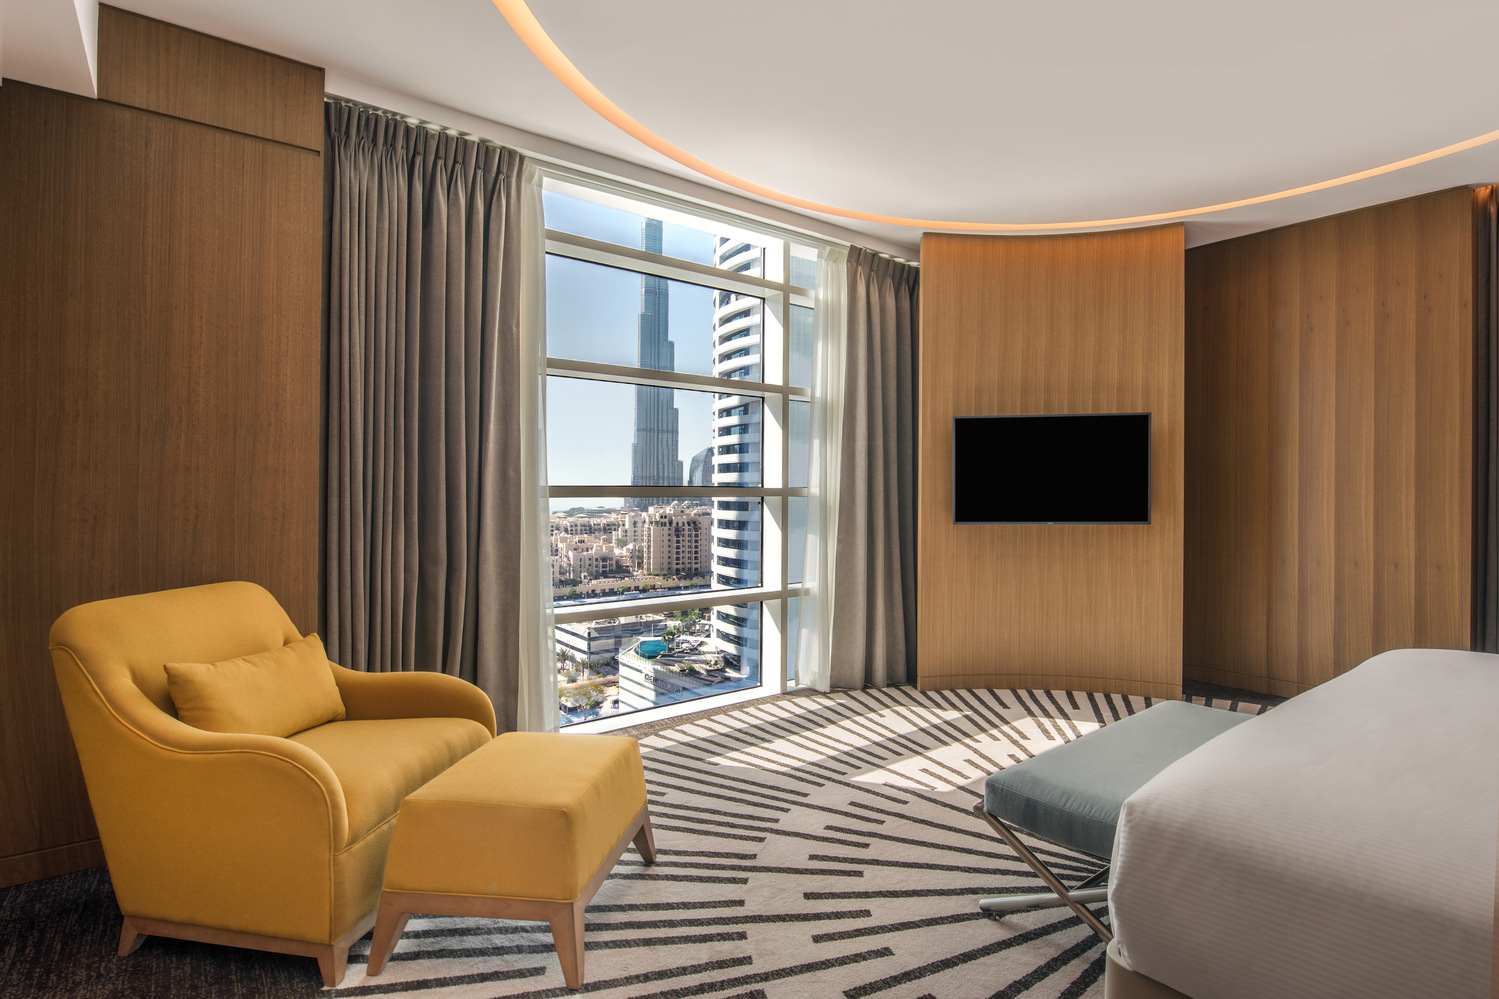 图片[6]|迪拜商务湾希尔顿双树酒店|ART-Arrakis | 建筑室内设计的创新与灵感